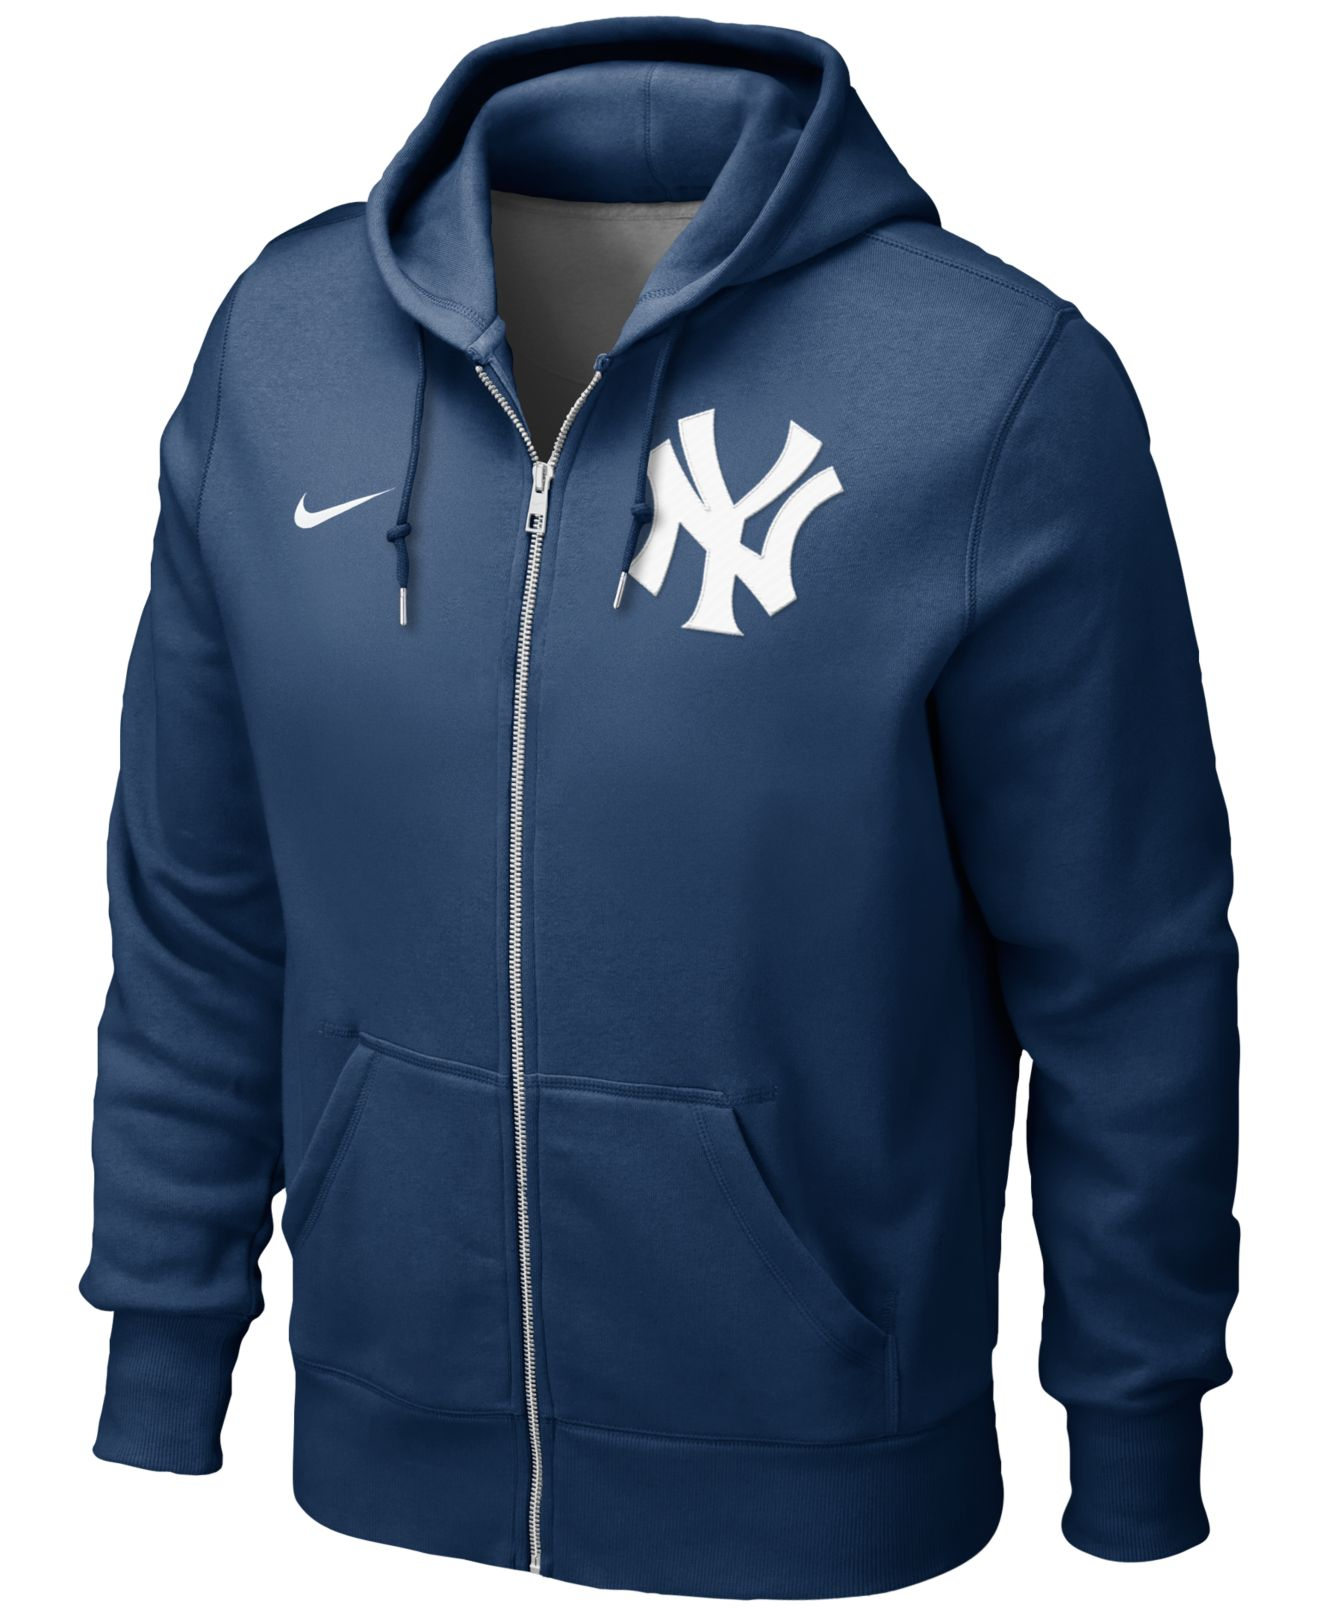 Yankees zipup hoodie www.armex.rs